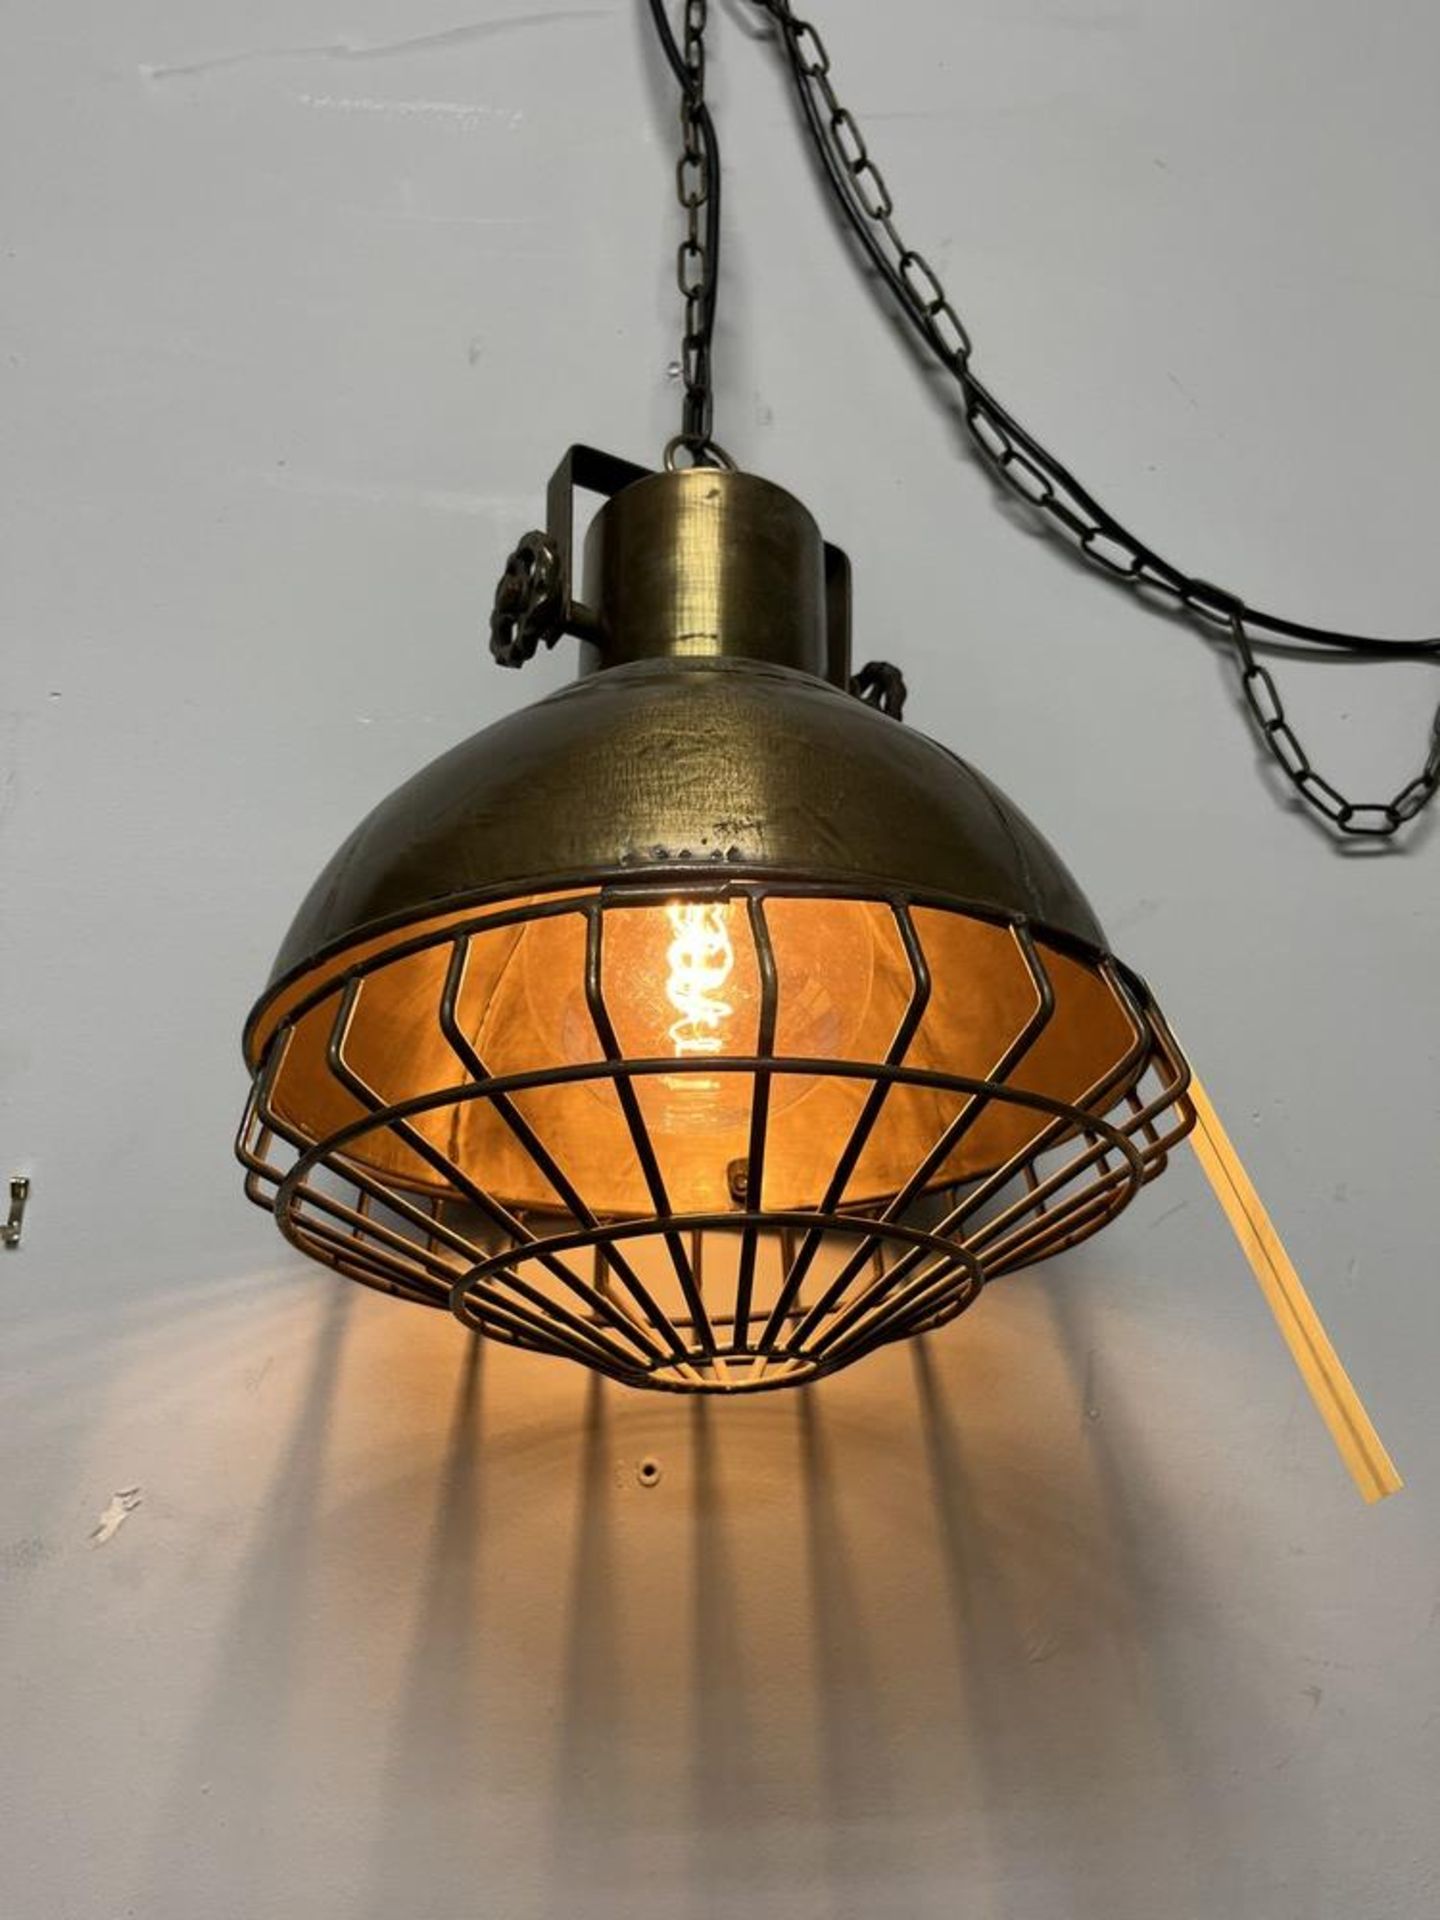 Belle lampe style entrepot métal / laiton - Image 2 of 2